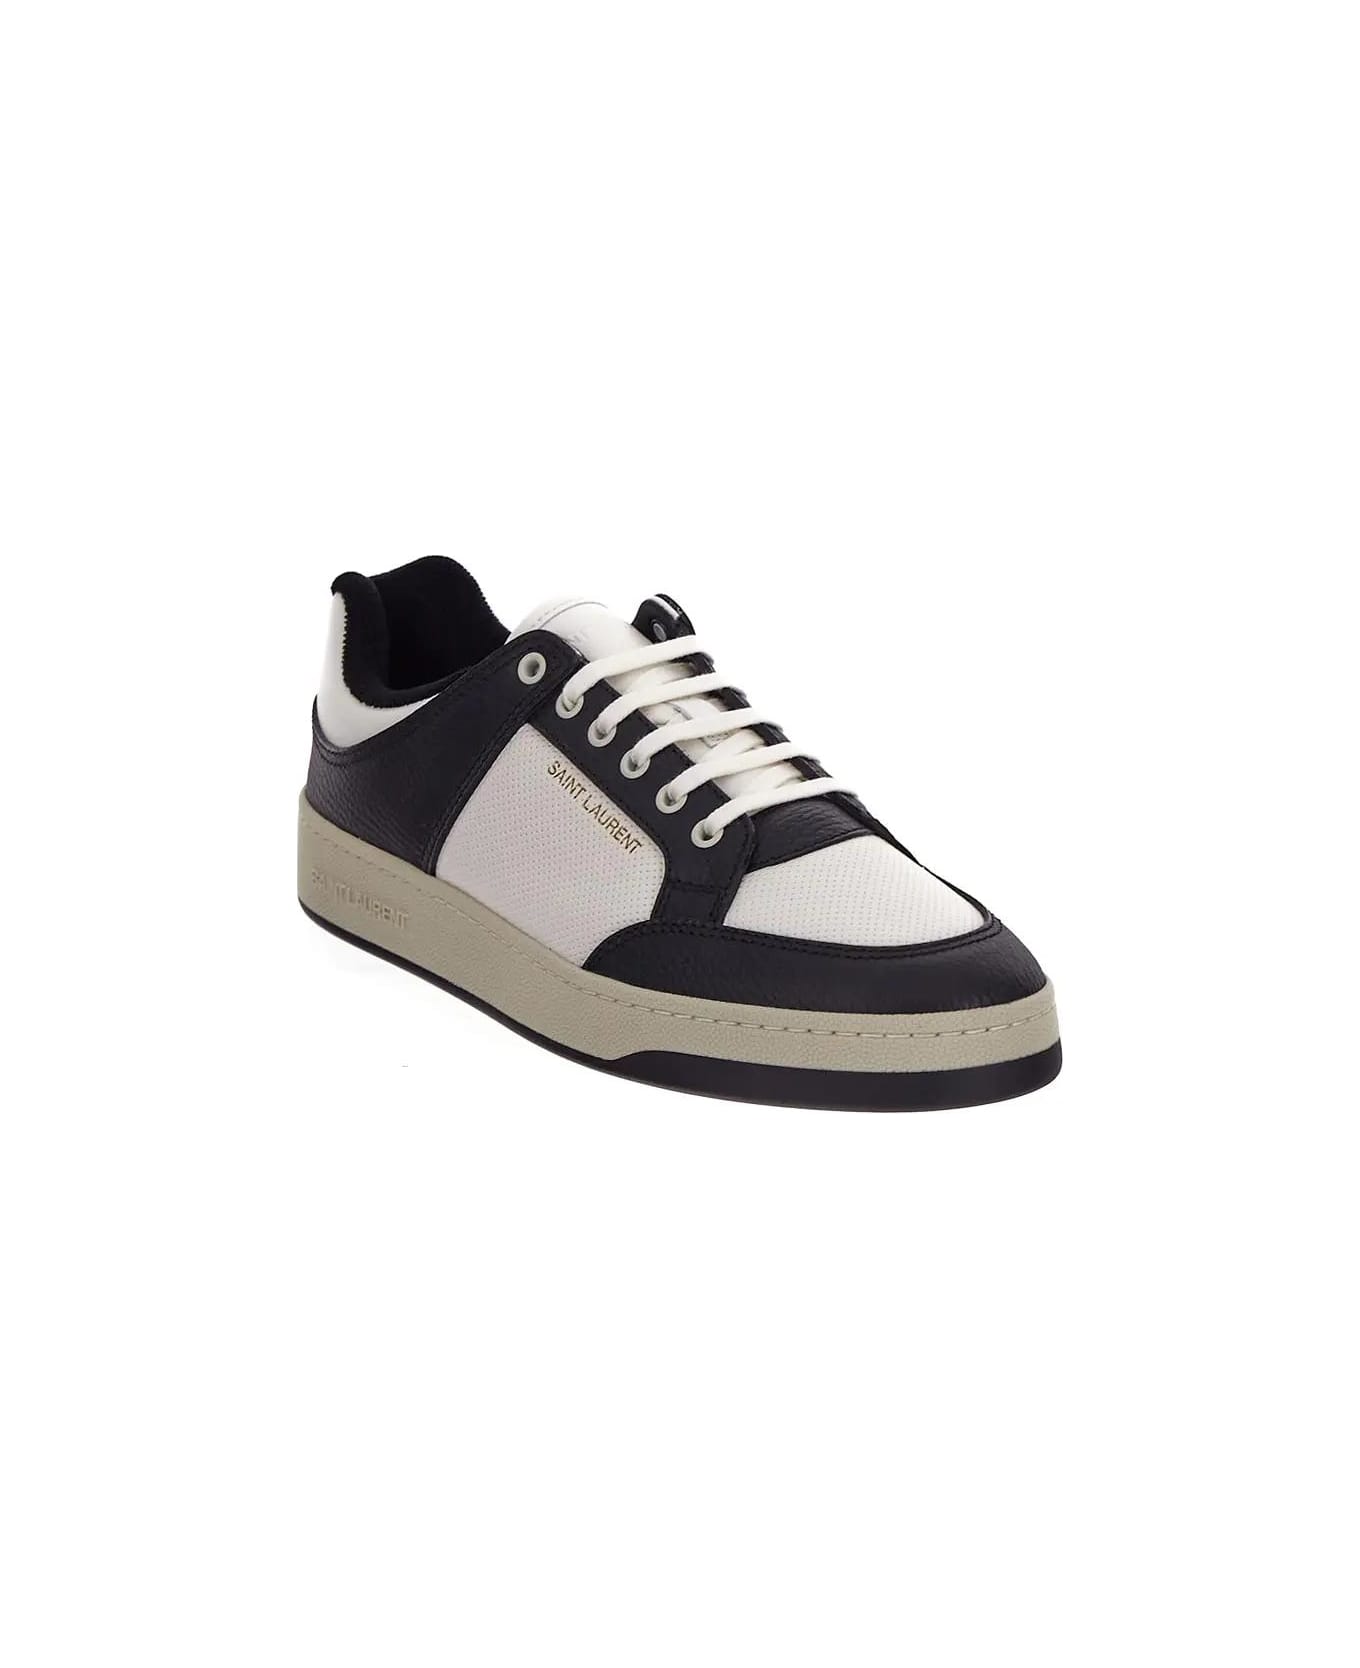 Saint Laurent Sl/61 Sneakers - Coffee white\nero